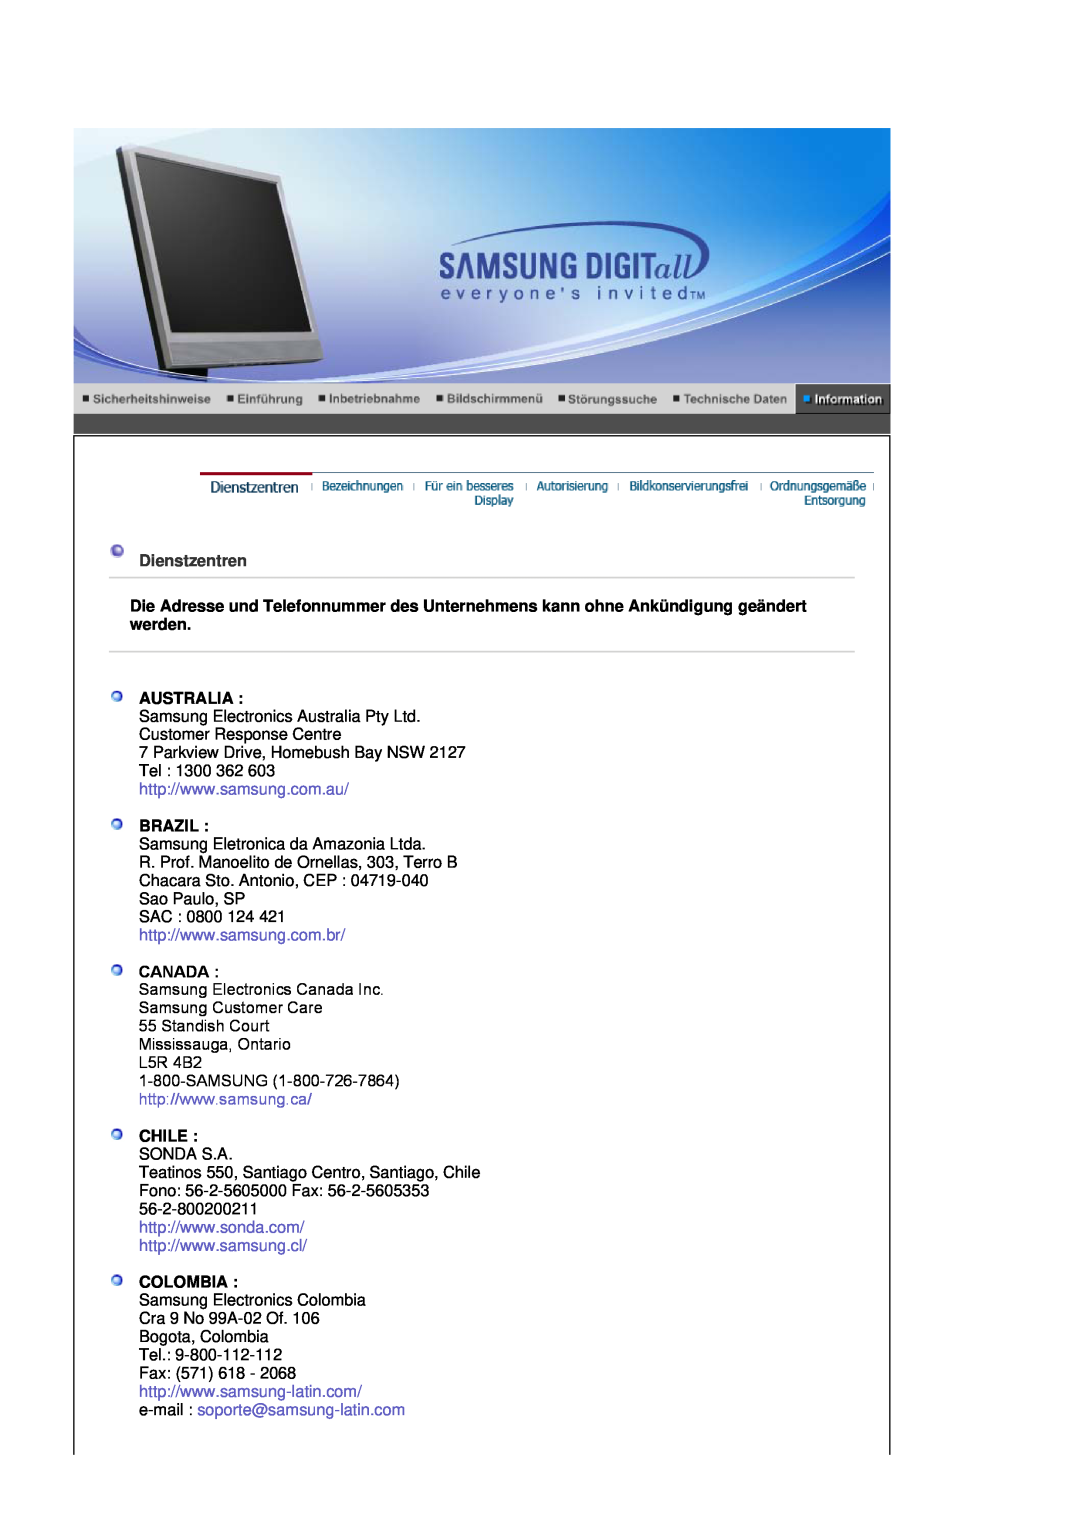 Samsung LS17MJSTSE/EDC, LS19MJSTS7/EDC, MJ19MSTSQ/EDC Dienstzentren, Australia, Brazil, Canada, Chile Sonda S.A, Colombia 